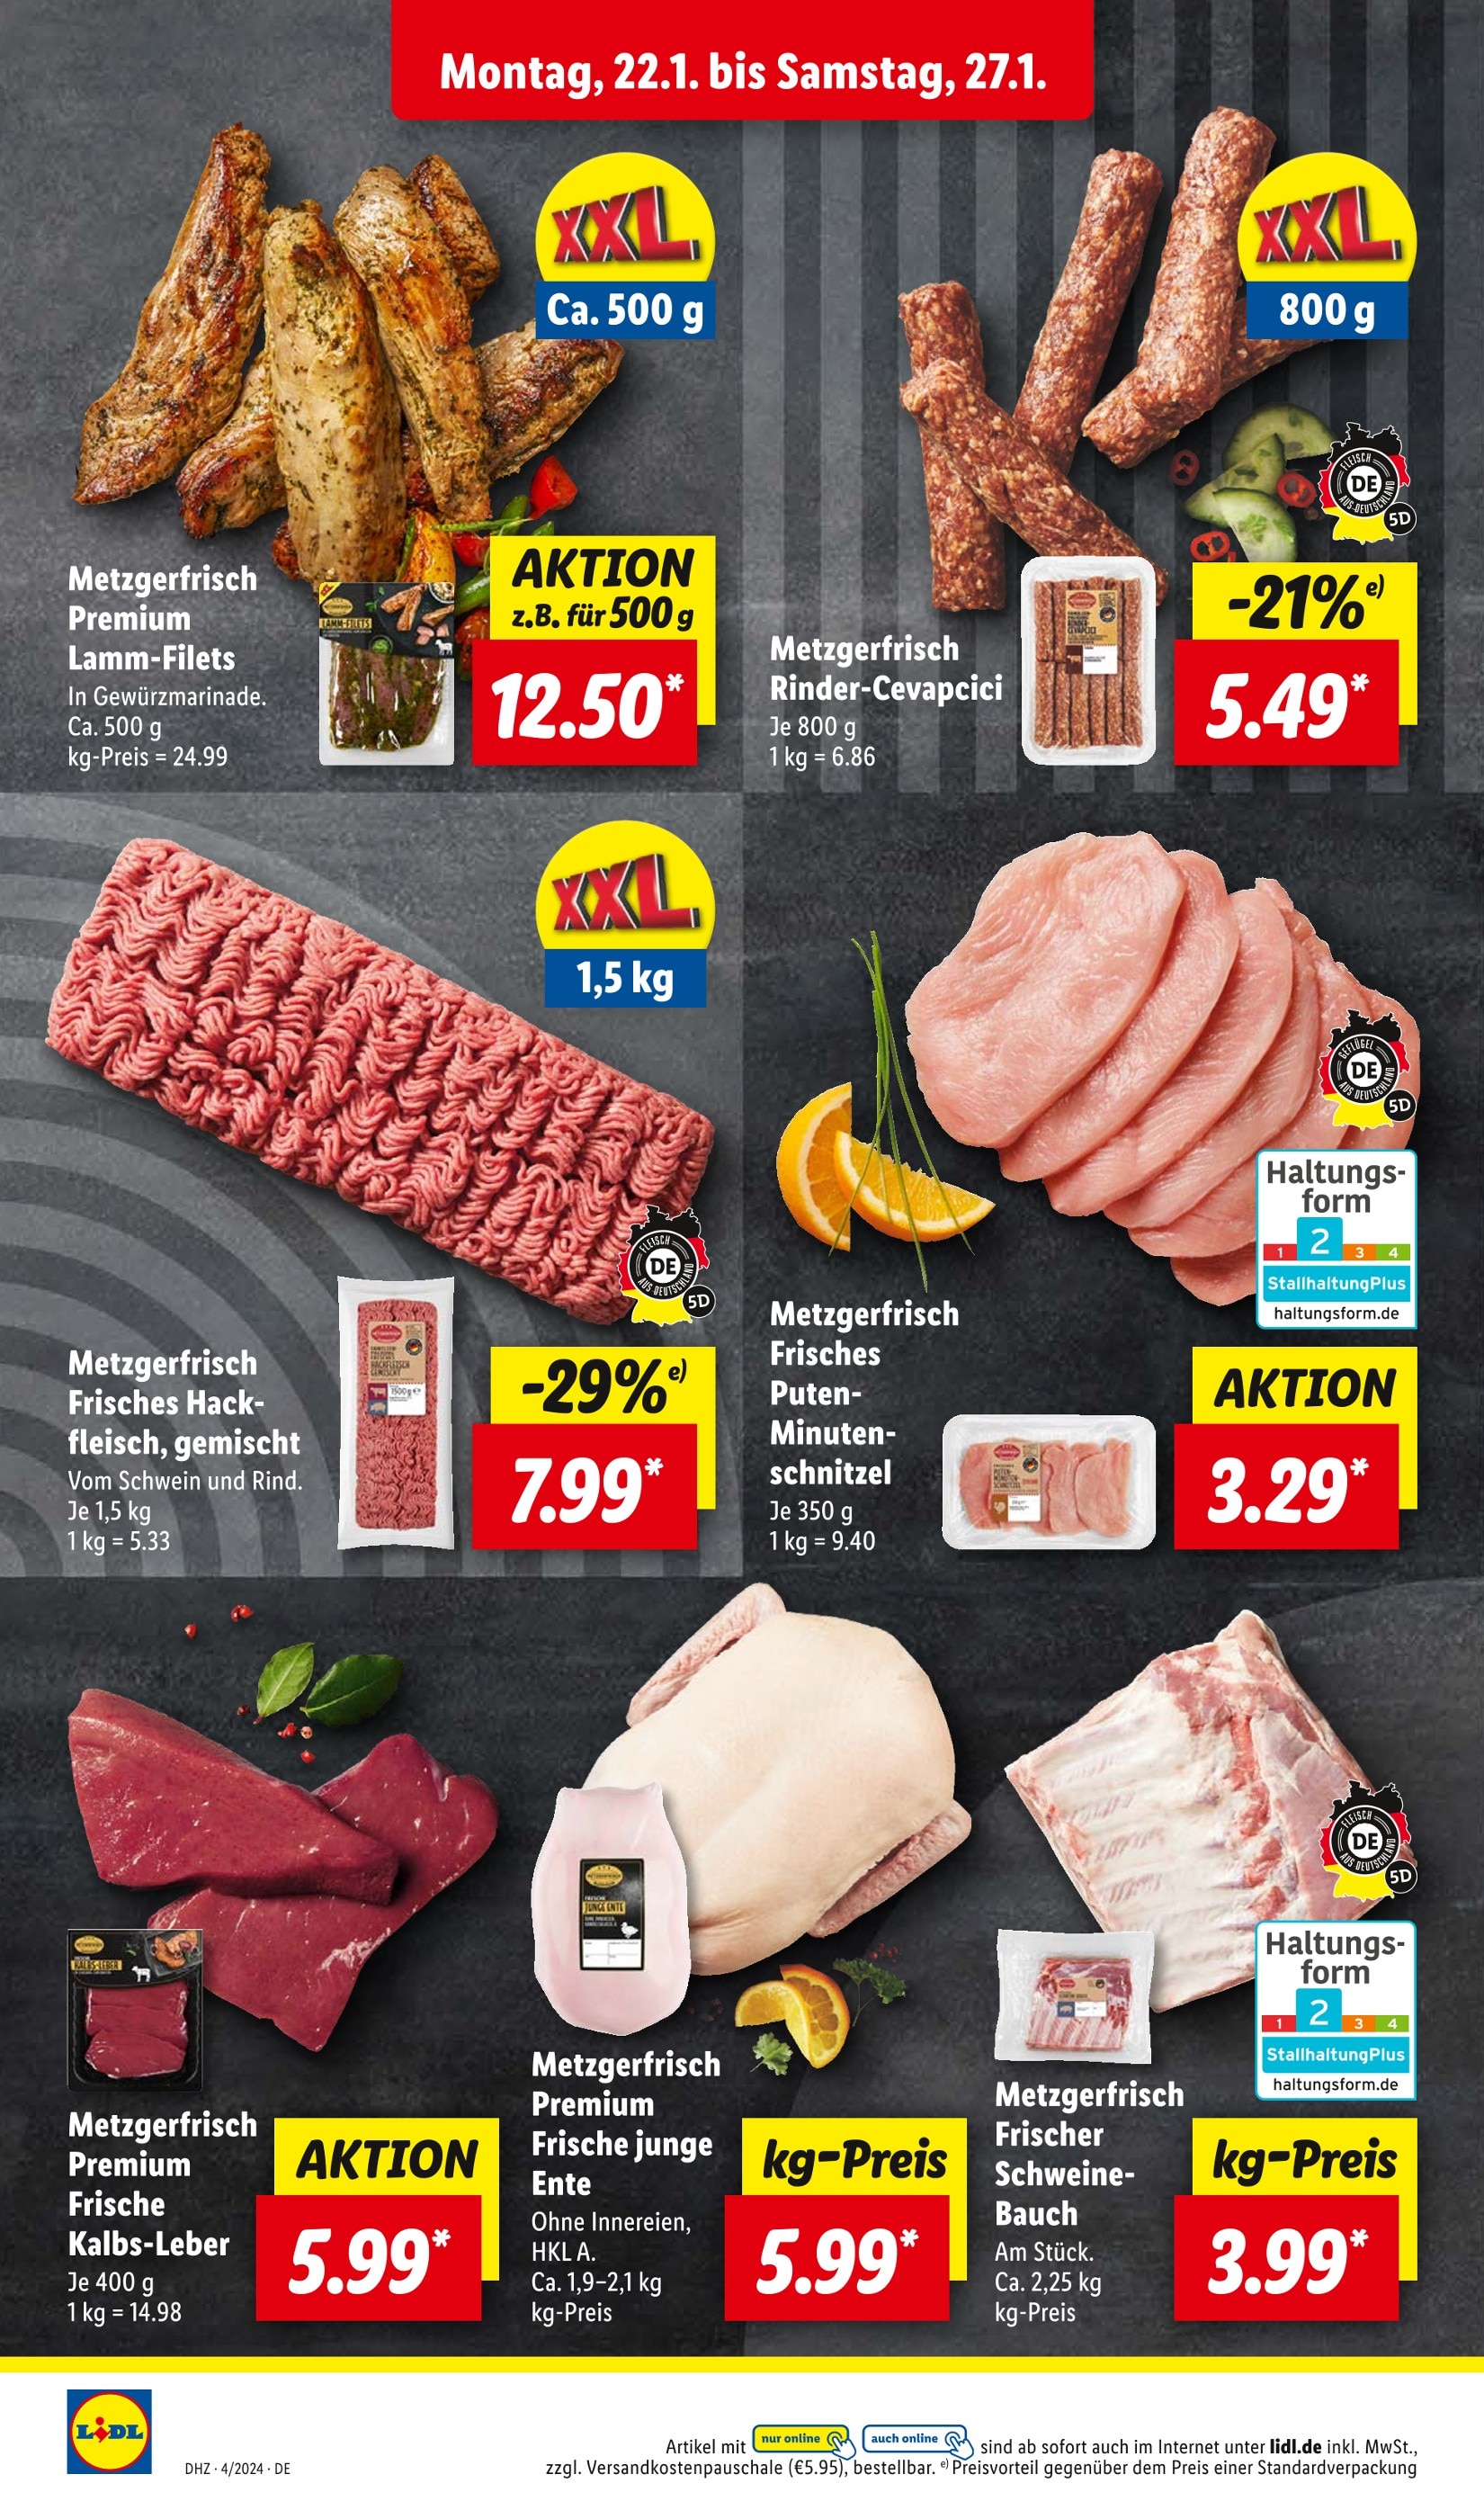 Schweinebauch in in Angebote günstige - Görlitz Görlitz kaufen